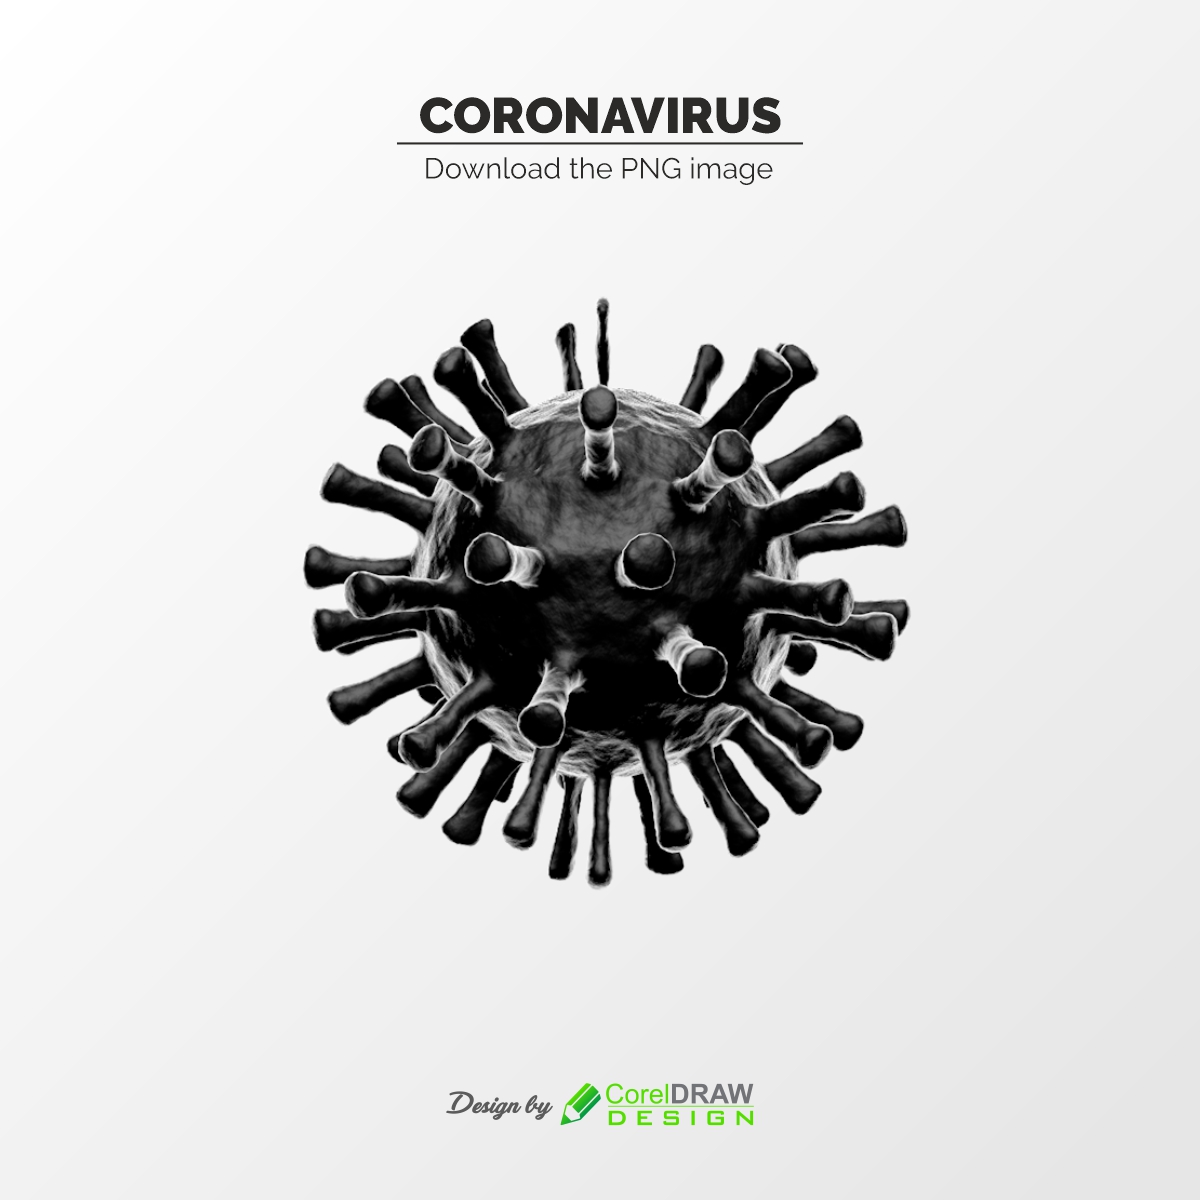 Corona Virus PNG image Free Download